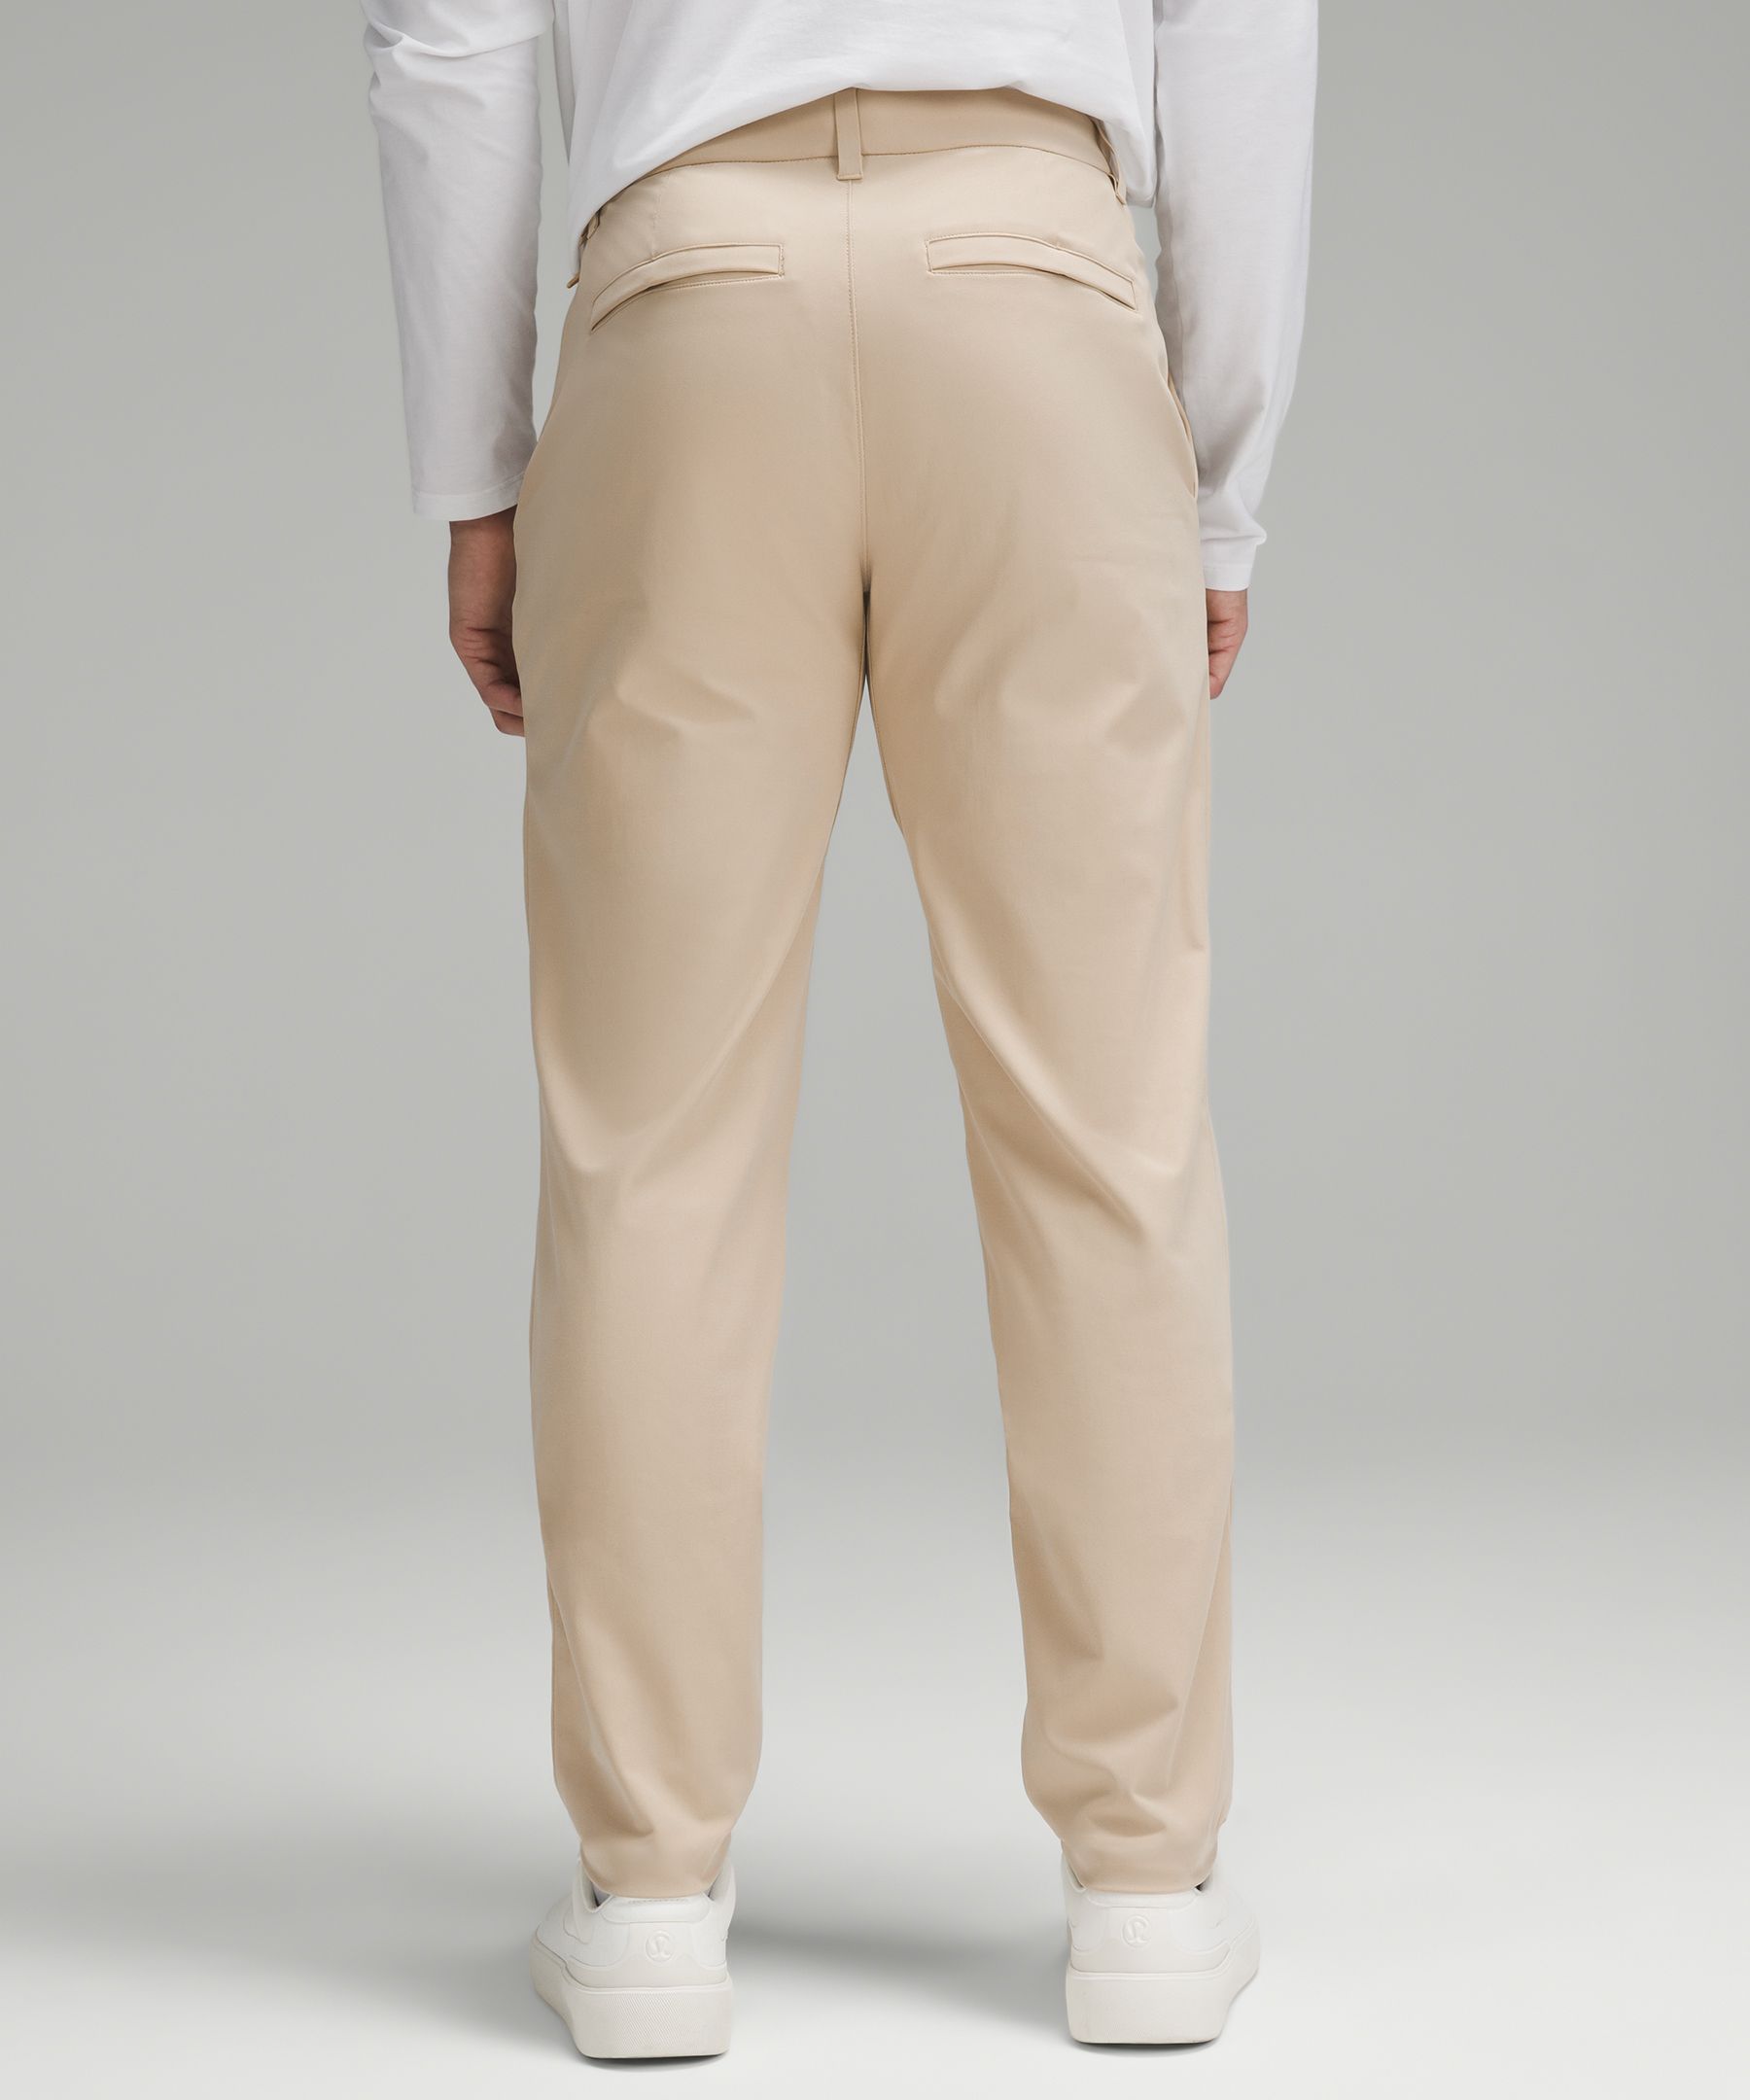 Shop Lululemon Abc Classic-fit Trousers 28"l Warpstreme